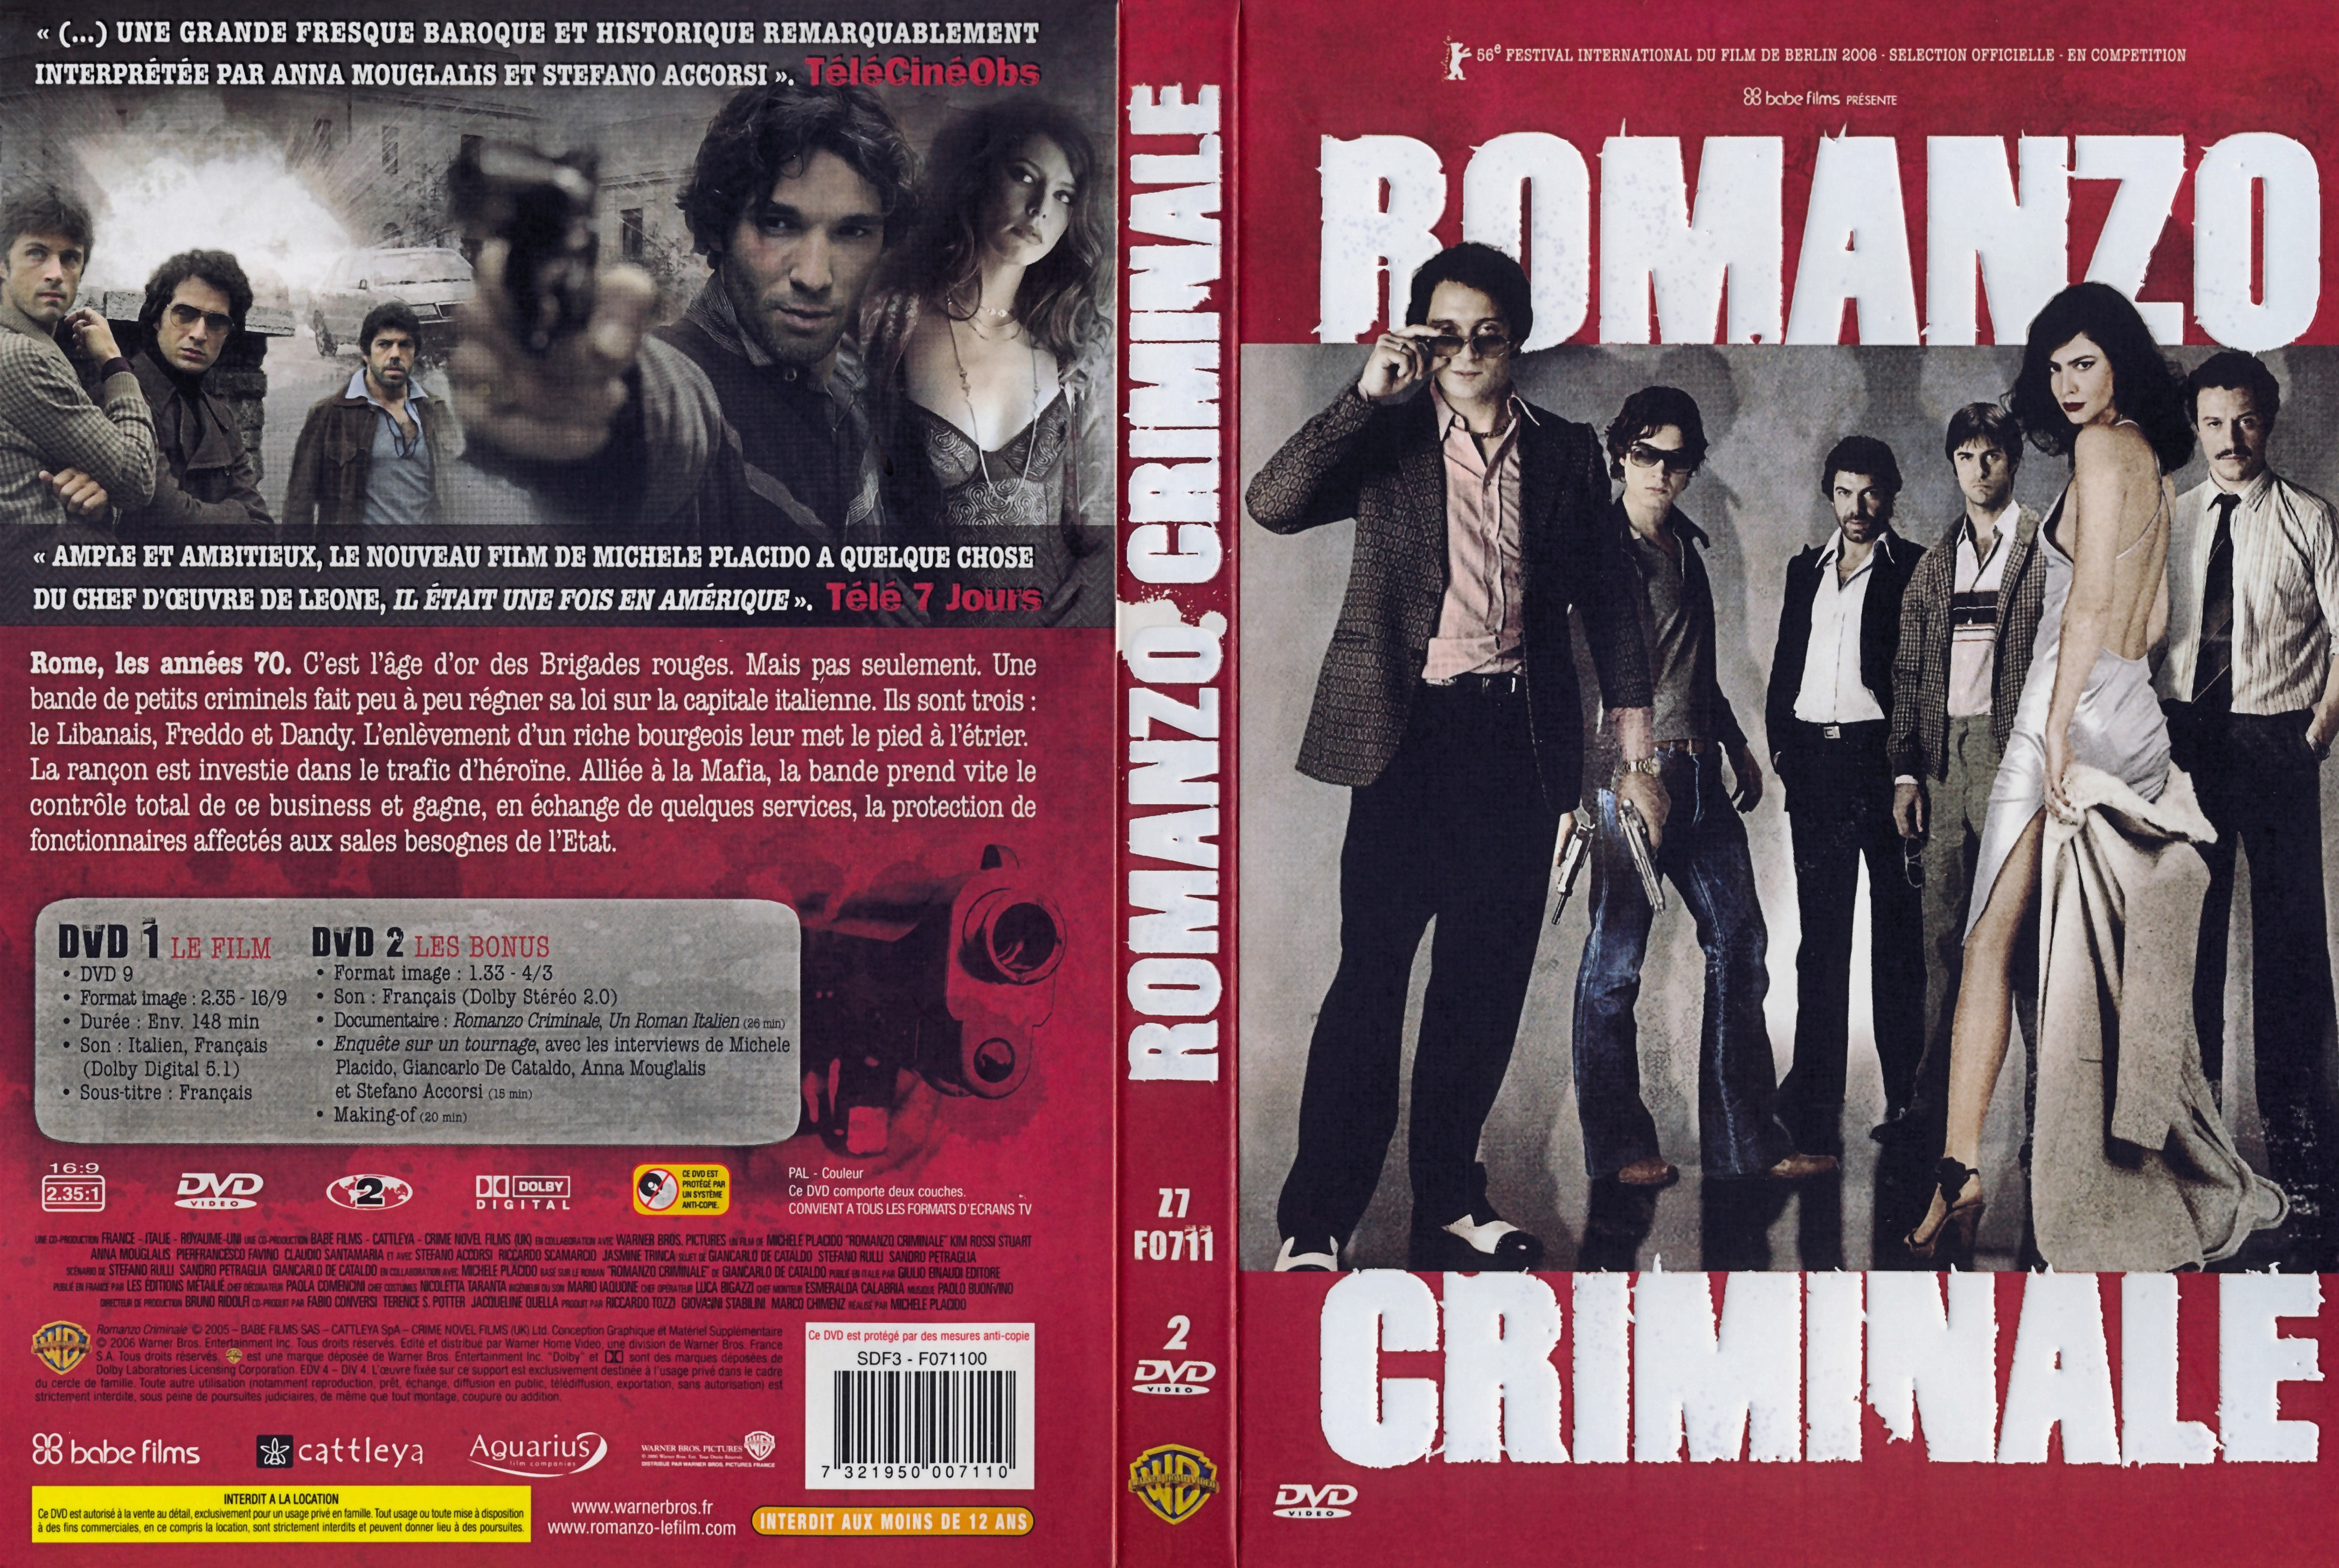 Jaquette DVD Romanzo criminale v3